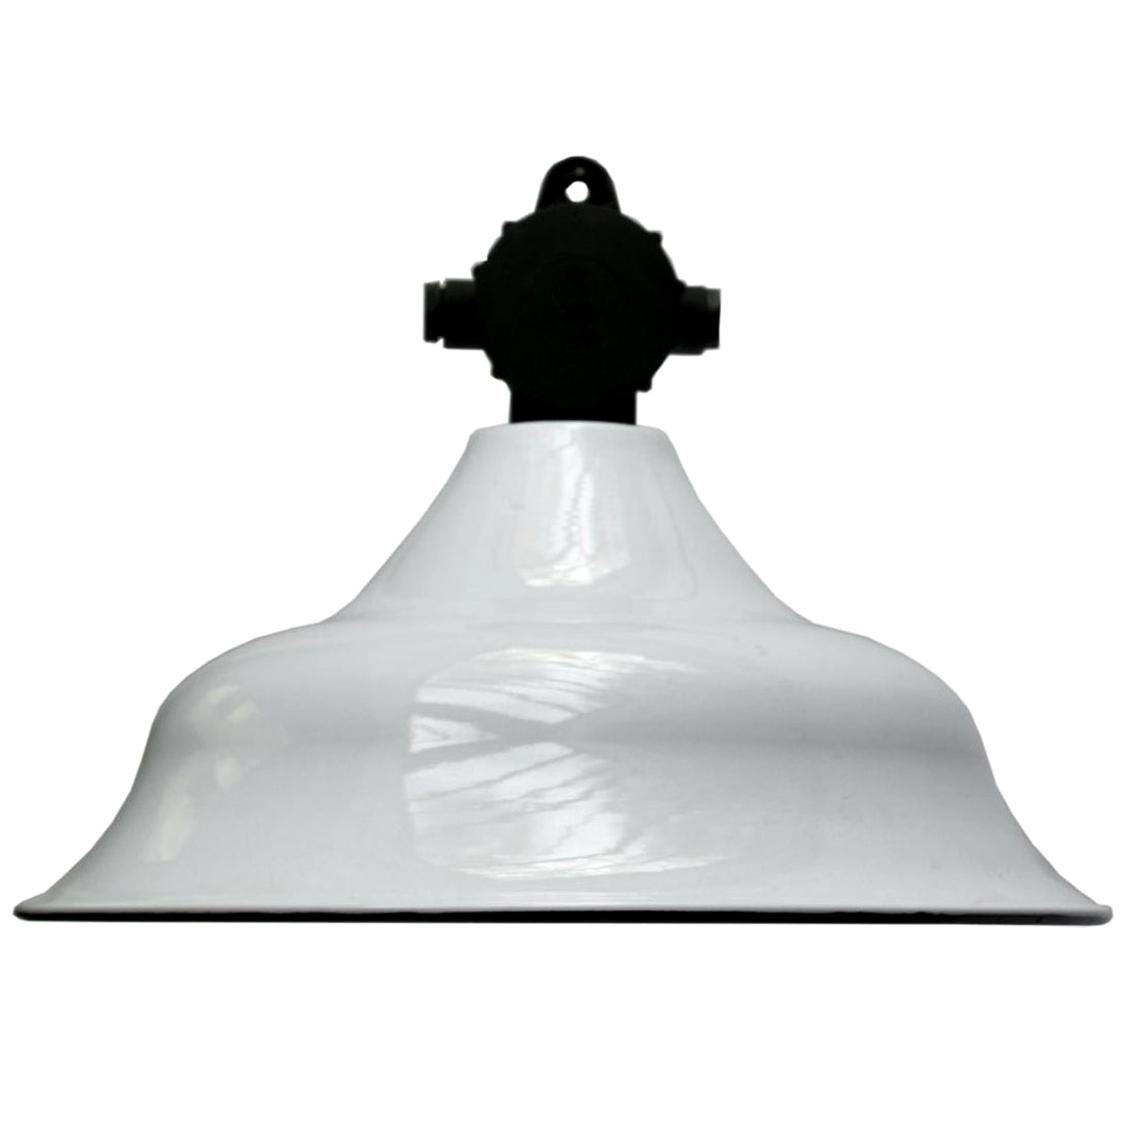 White Enamel Vintage Industrial Enamel Bakelite Top Factory Pendant Lamps